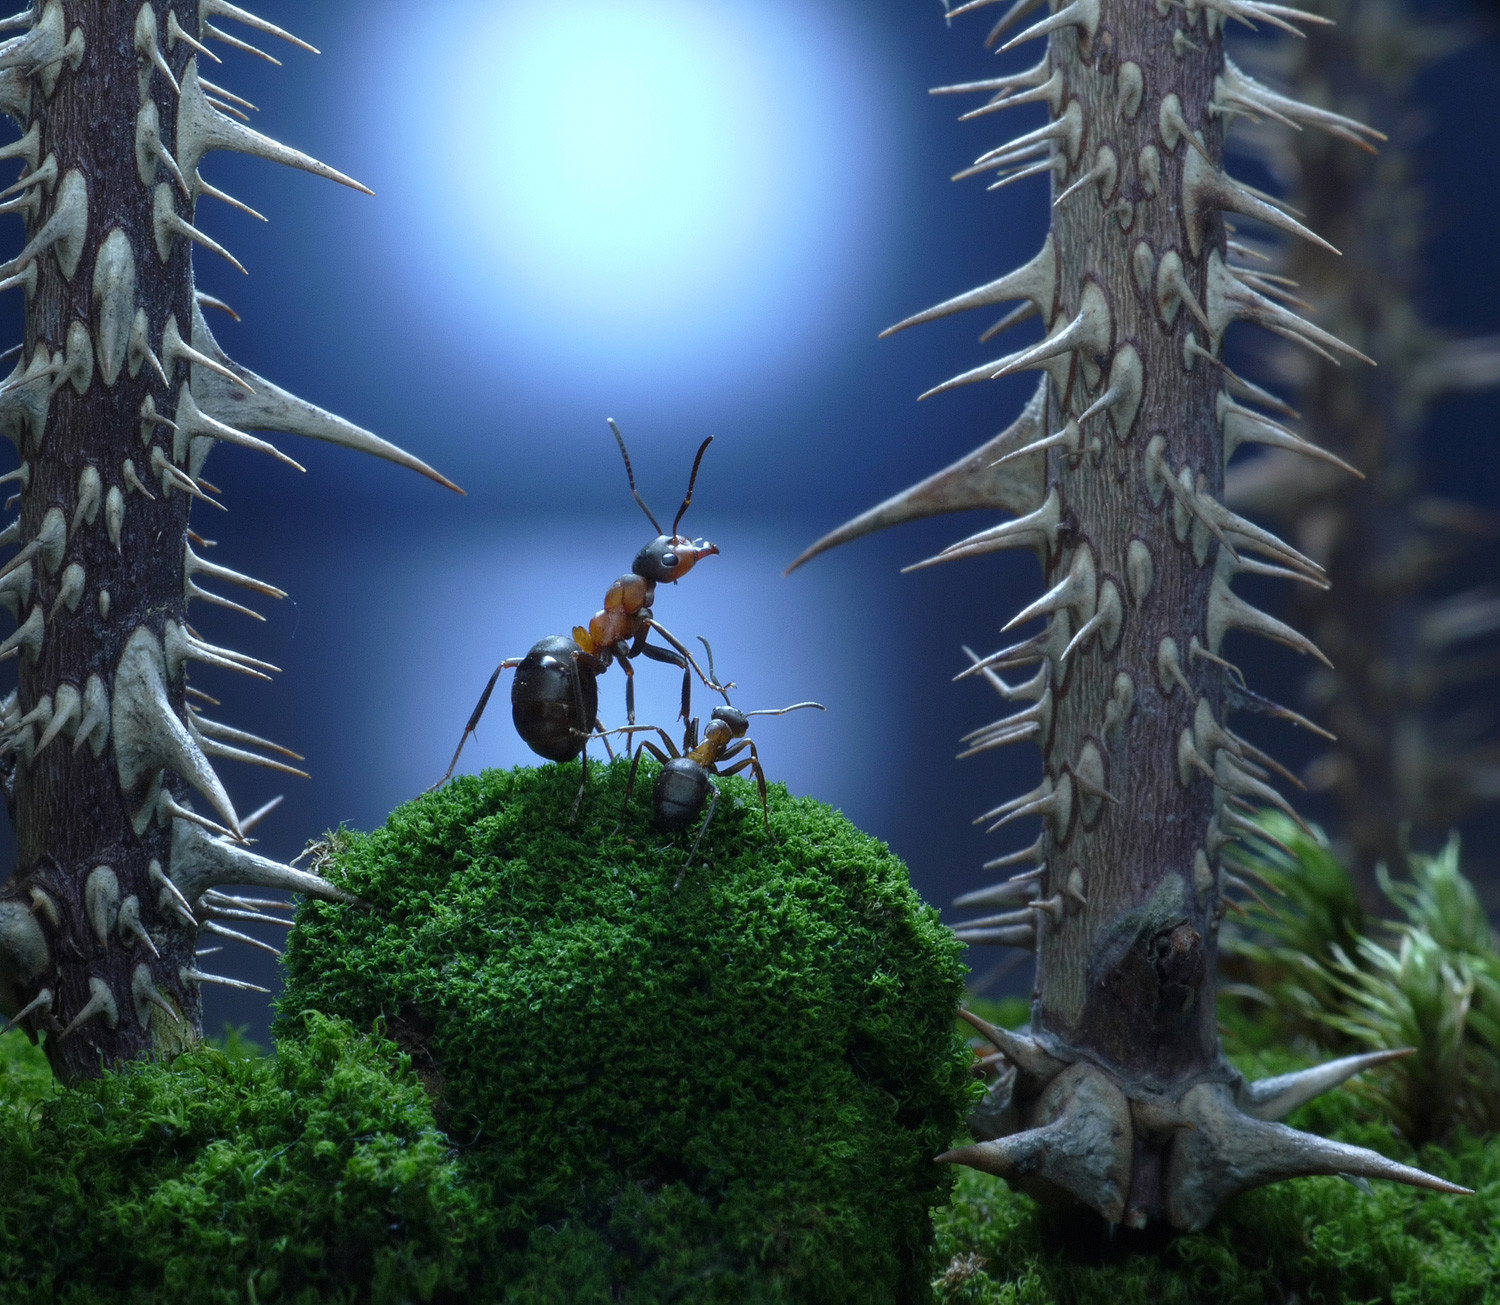 Fourmiliere Interieure : Visitez l'intérieur d'une fourmilière géante au Brésil / 1,867 likes ...